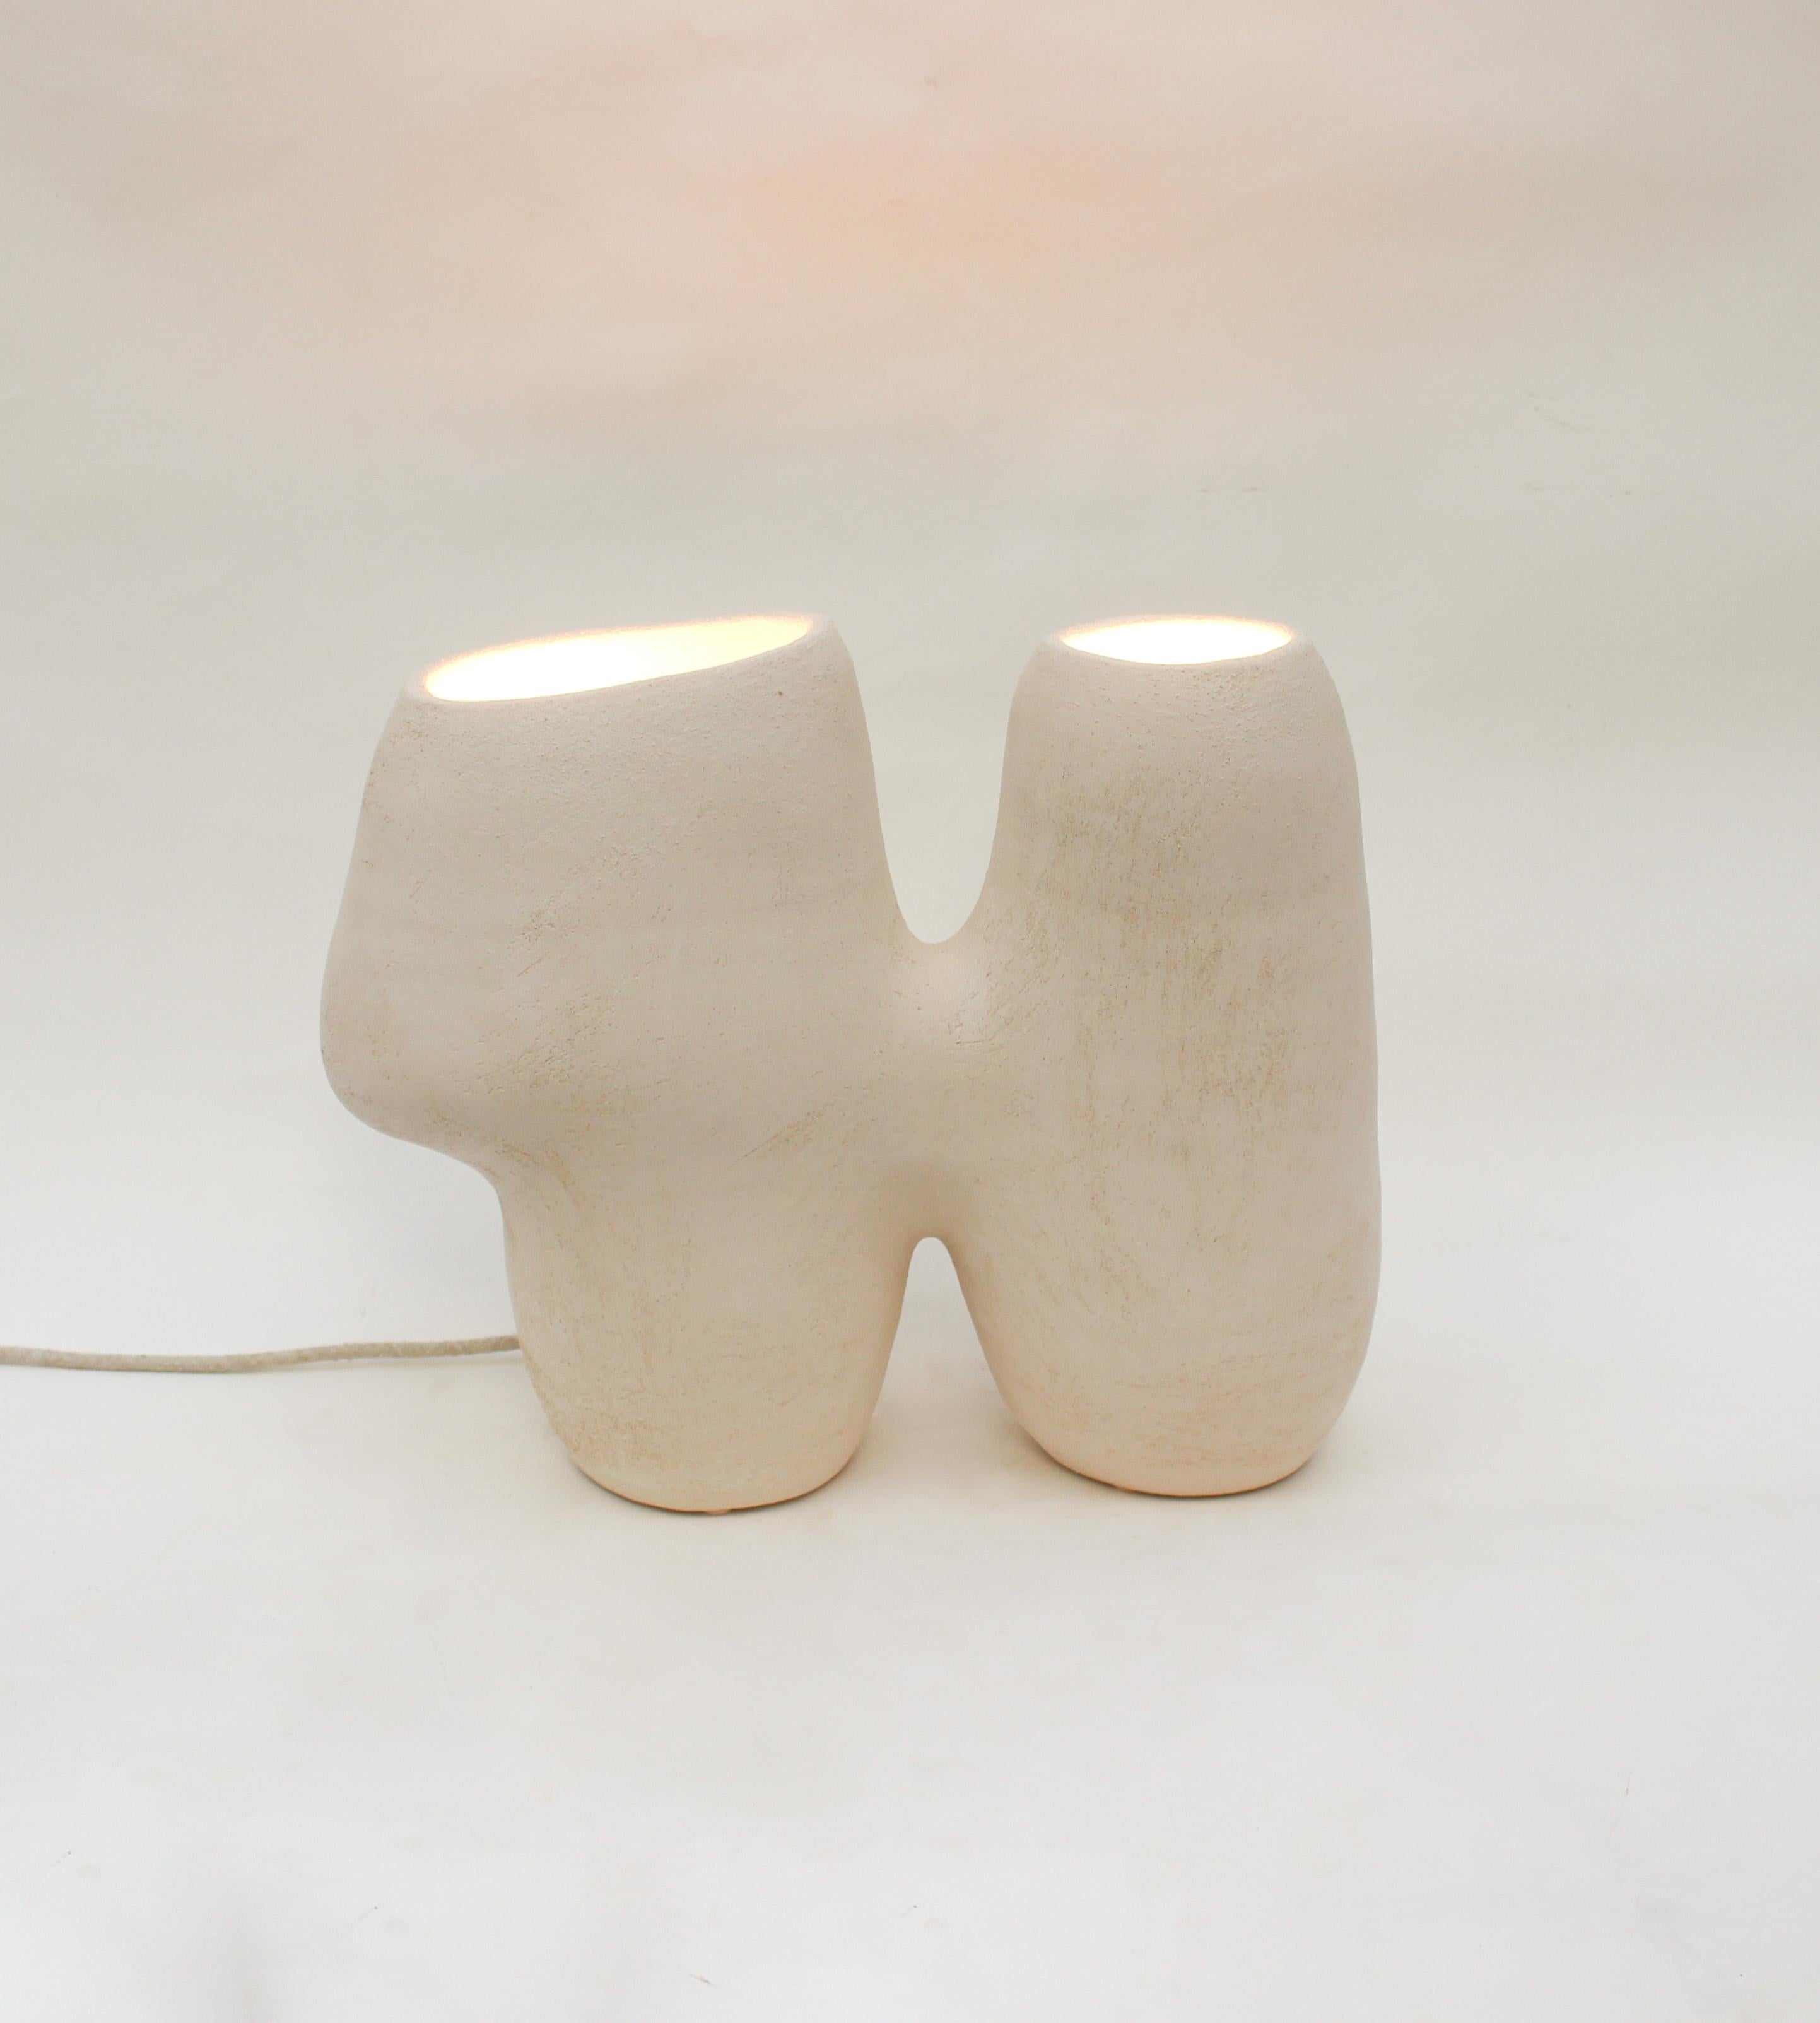 Lampe Billie #1 par Elisa Uberti
Série limitée à 4 exemplaires numérotés + 1AP
Dimensions : L 45 x D&H 15 x H 35 cm
MATERIAL : Grès blanc.
Ce produit est fabriqué à la main, les dimensions peuvent varier. Veuillez nous contacter.

Après quinze ans